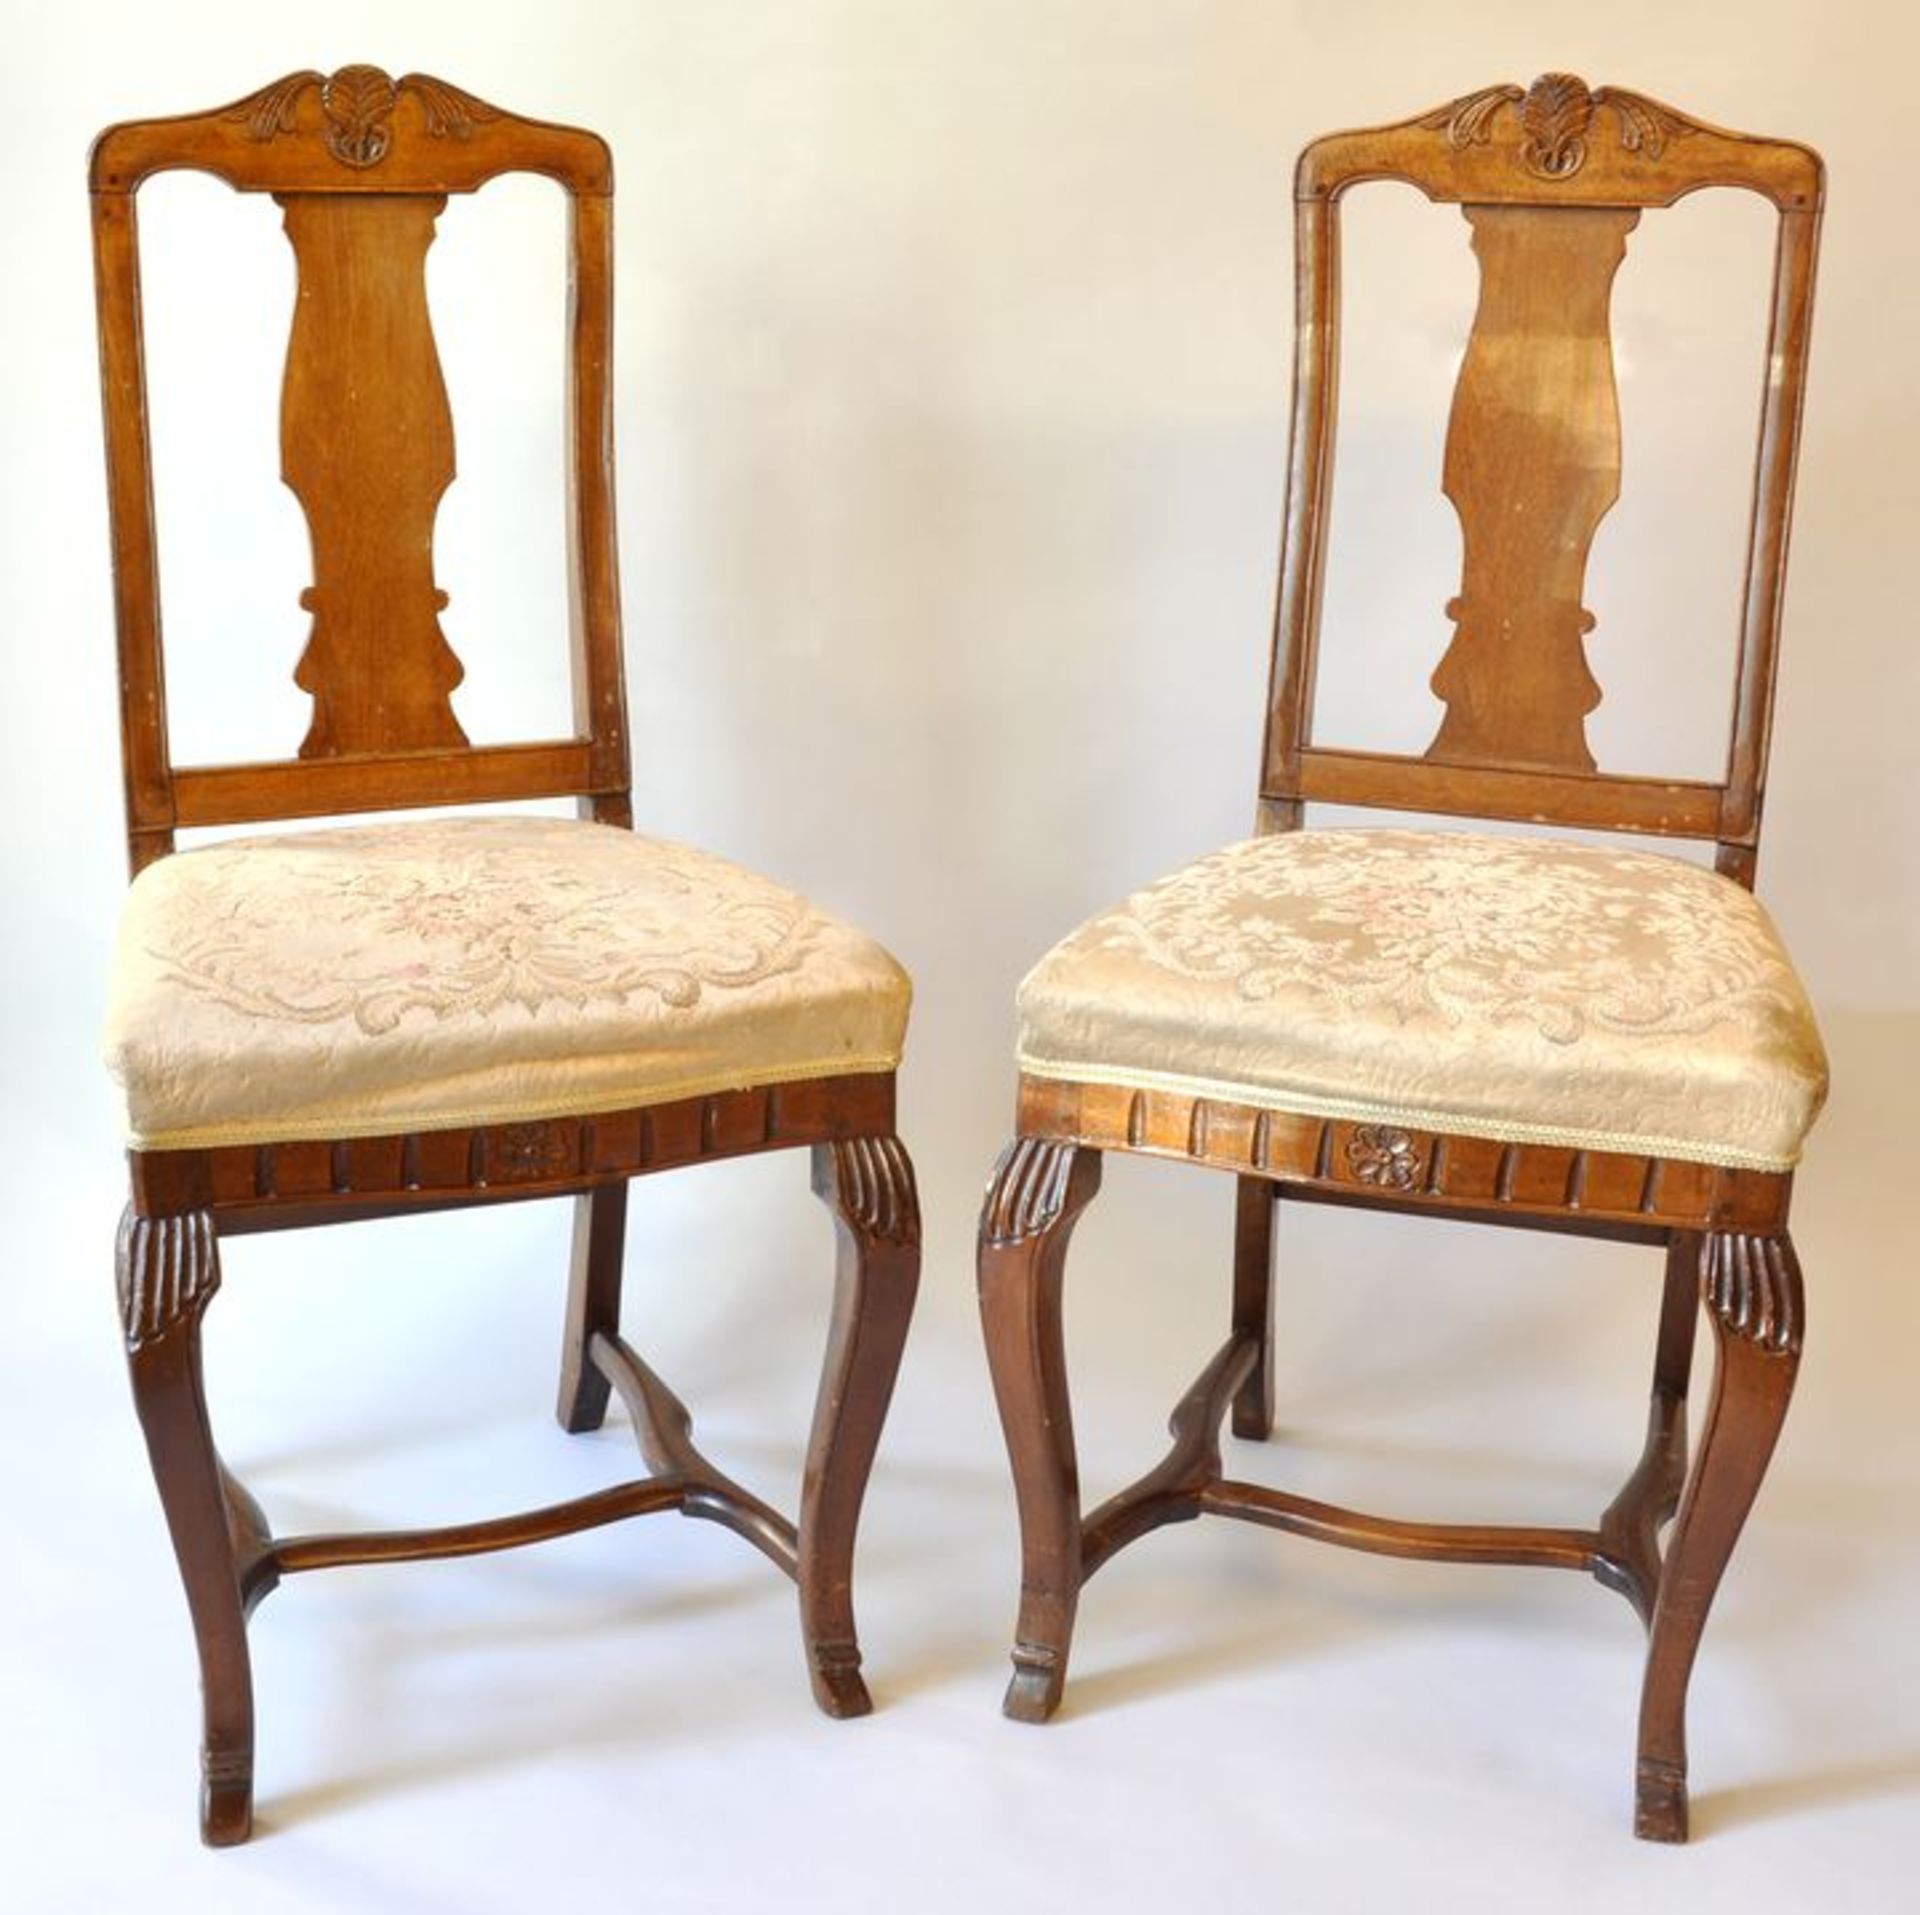 Paar Stühle, Sachsen, 1. H.18. Jh.Laubholz, Nussbaum gebeizt, geschwungene und geschnitzte Beine